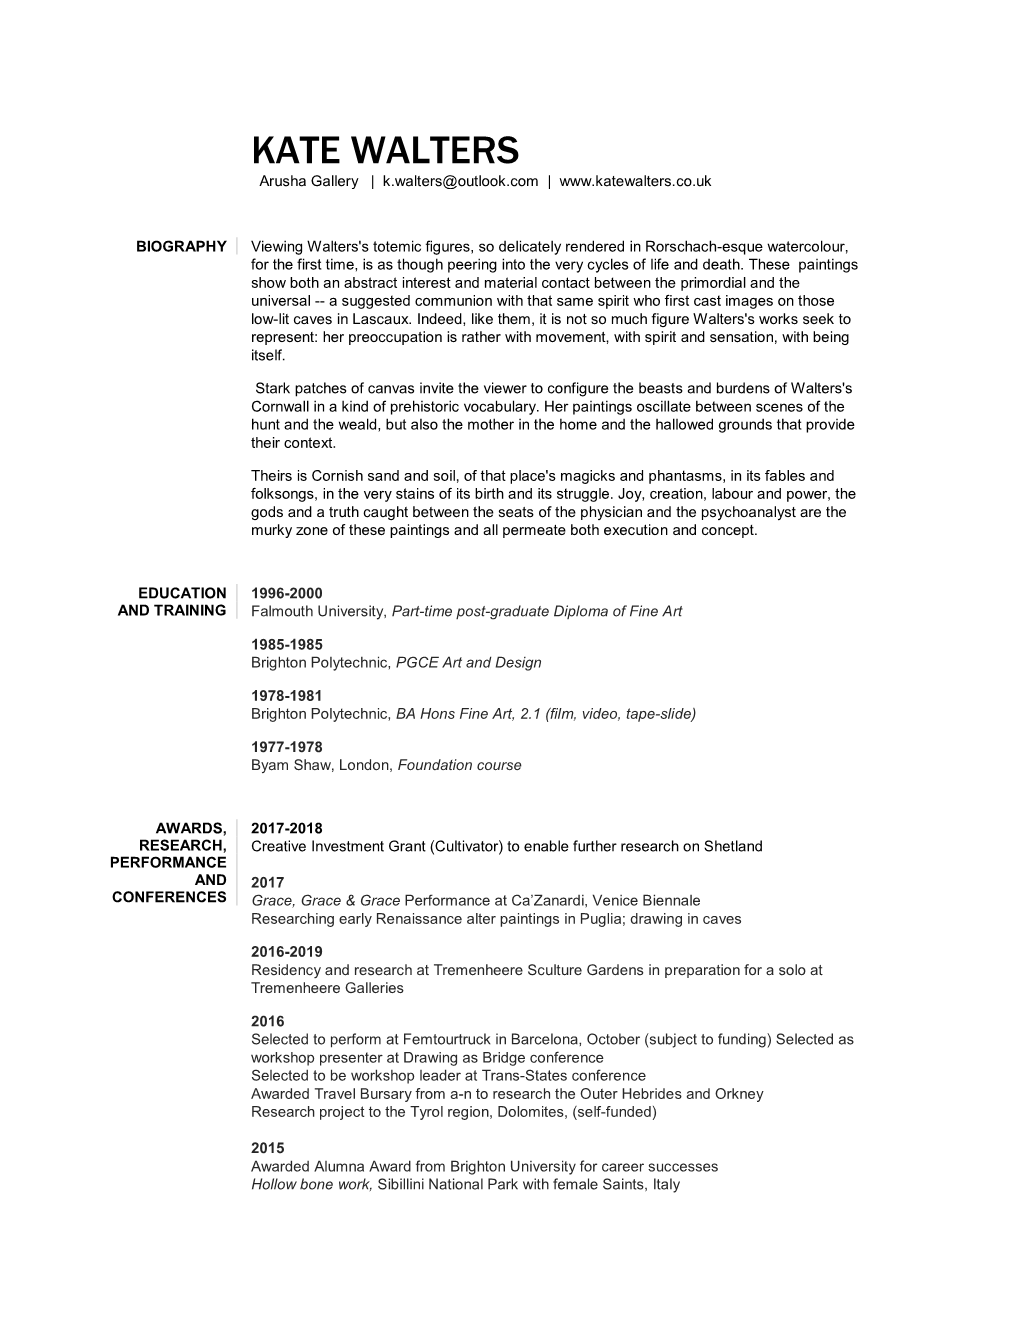 KATE WALTERS Arusha Gallery | K.Walters@Outlook.Com |